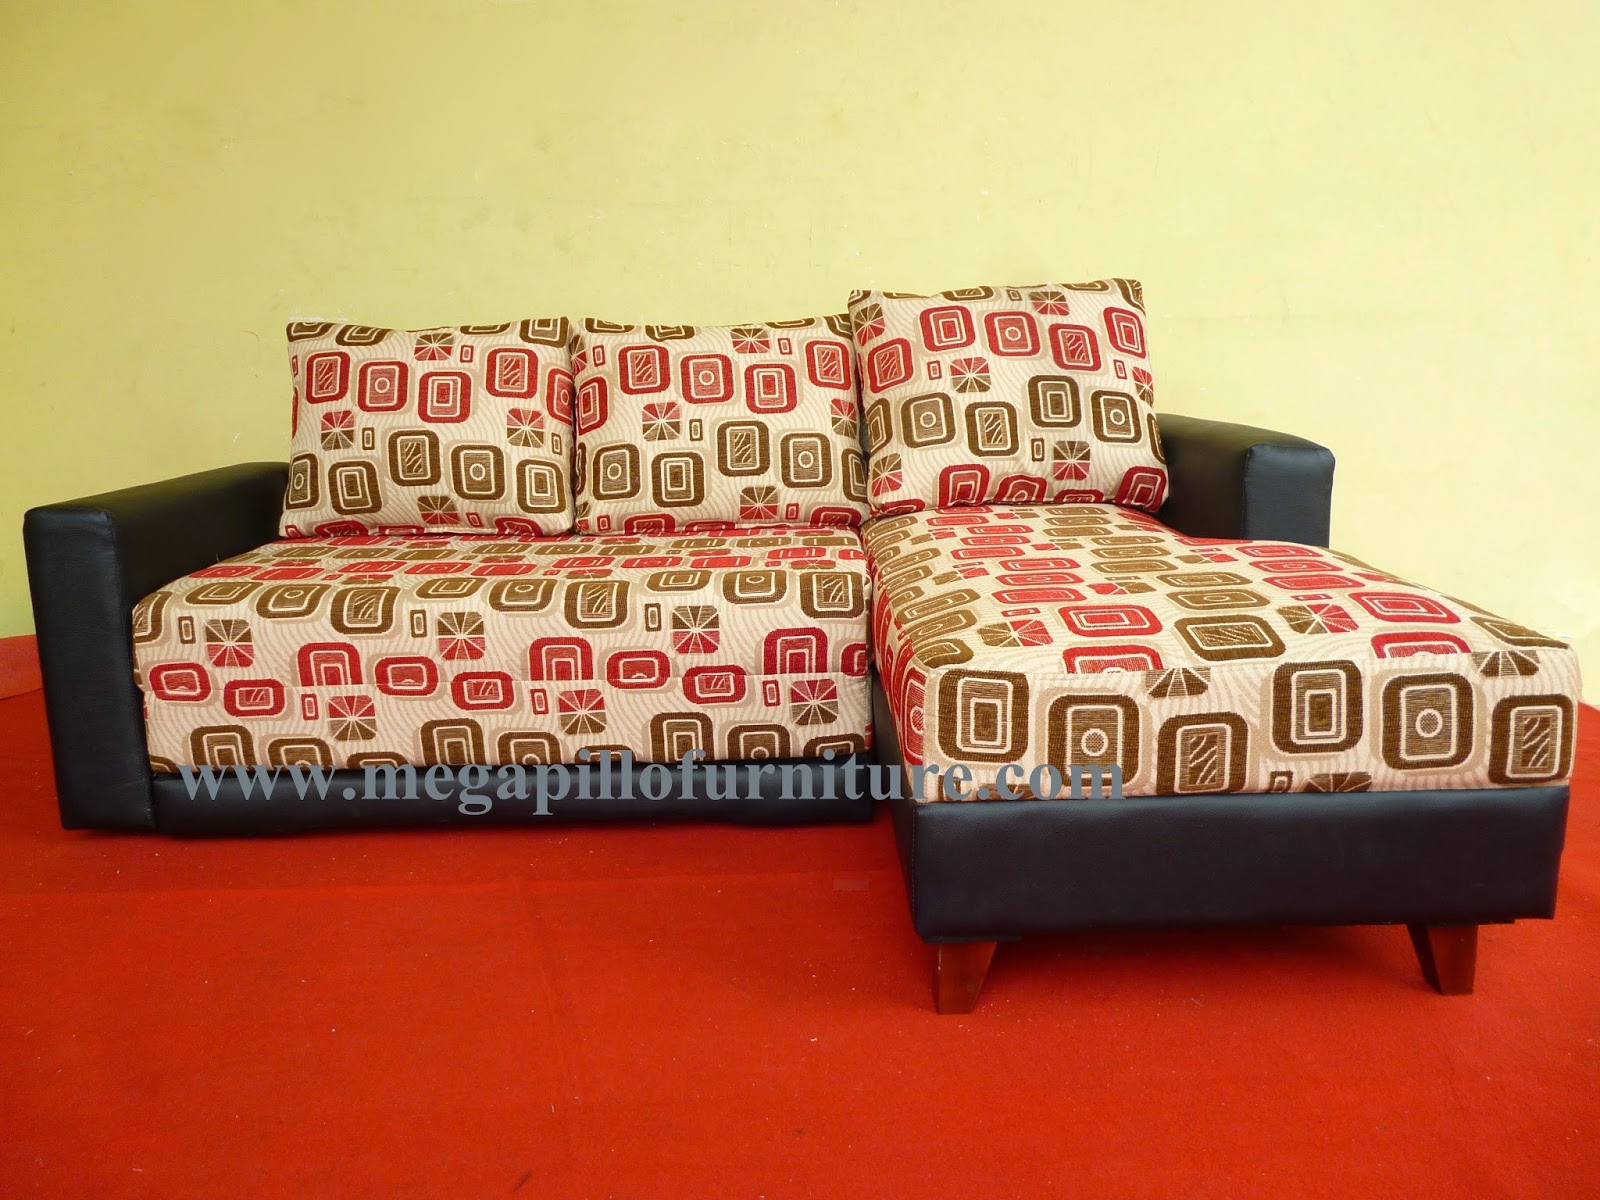 Megapillo Furniture Spring Bed Online Shop Sofa  Bed 